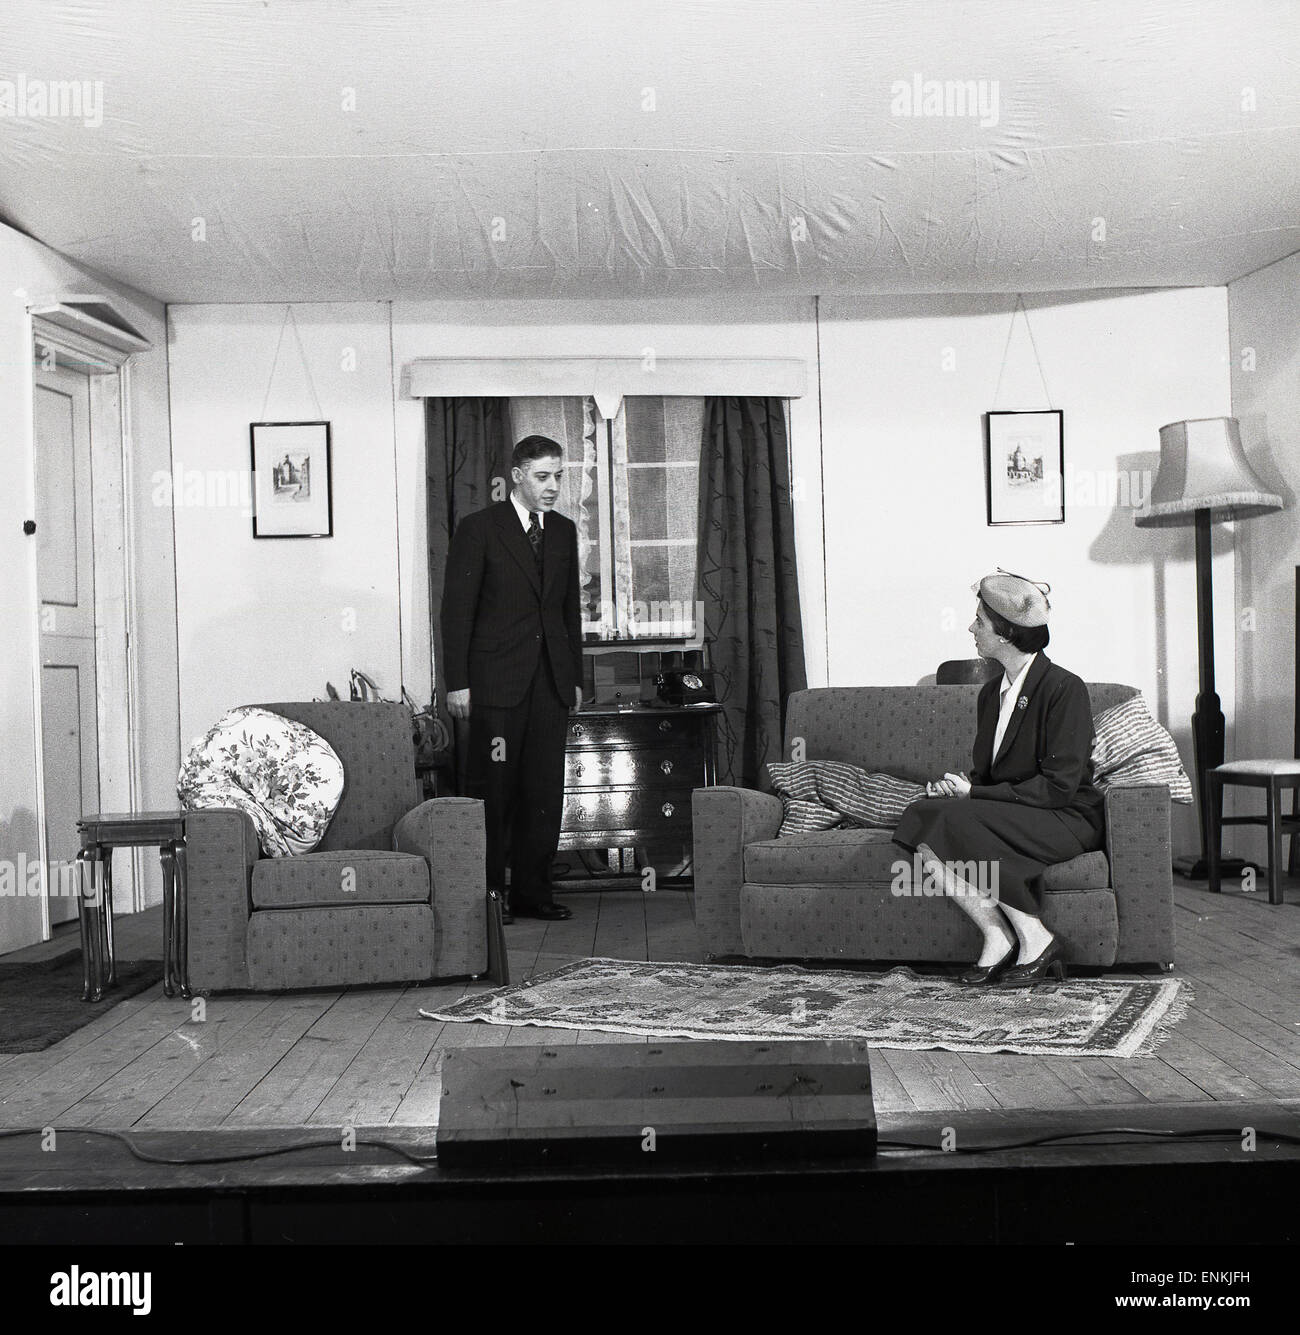 Années 1950, histoire, dramatics amateurs, deux acteurs, un homme et une femme sur une scène comme une salle de devant d'une maison jouant dans une pièce, Oxford, Angleterre, Royaume-Uni. Le théâtre amateur était une activité de loisirs populaire en Grande-Bretagne à cette époque. Banque D'Images